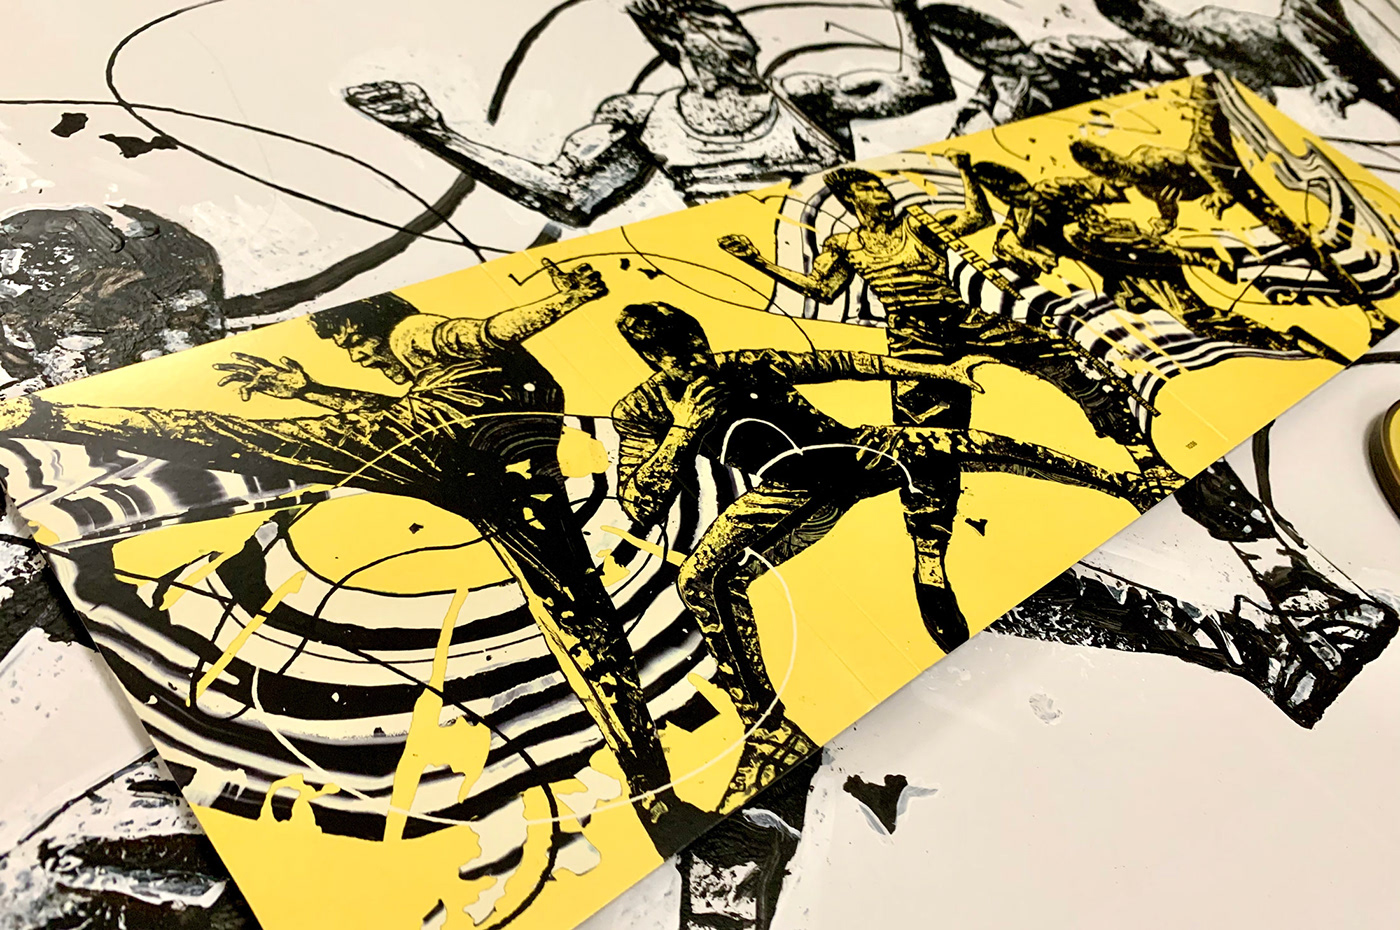 Bruce Lee artwork for Criterion